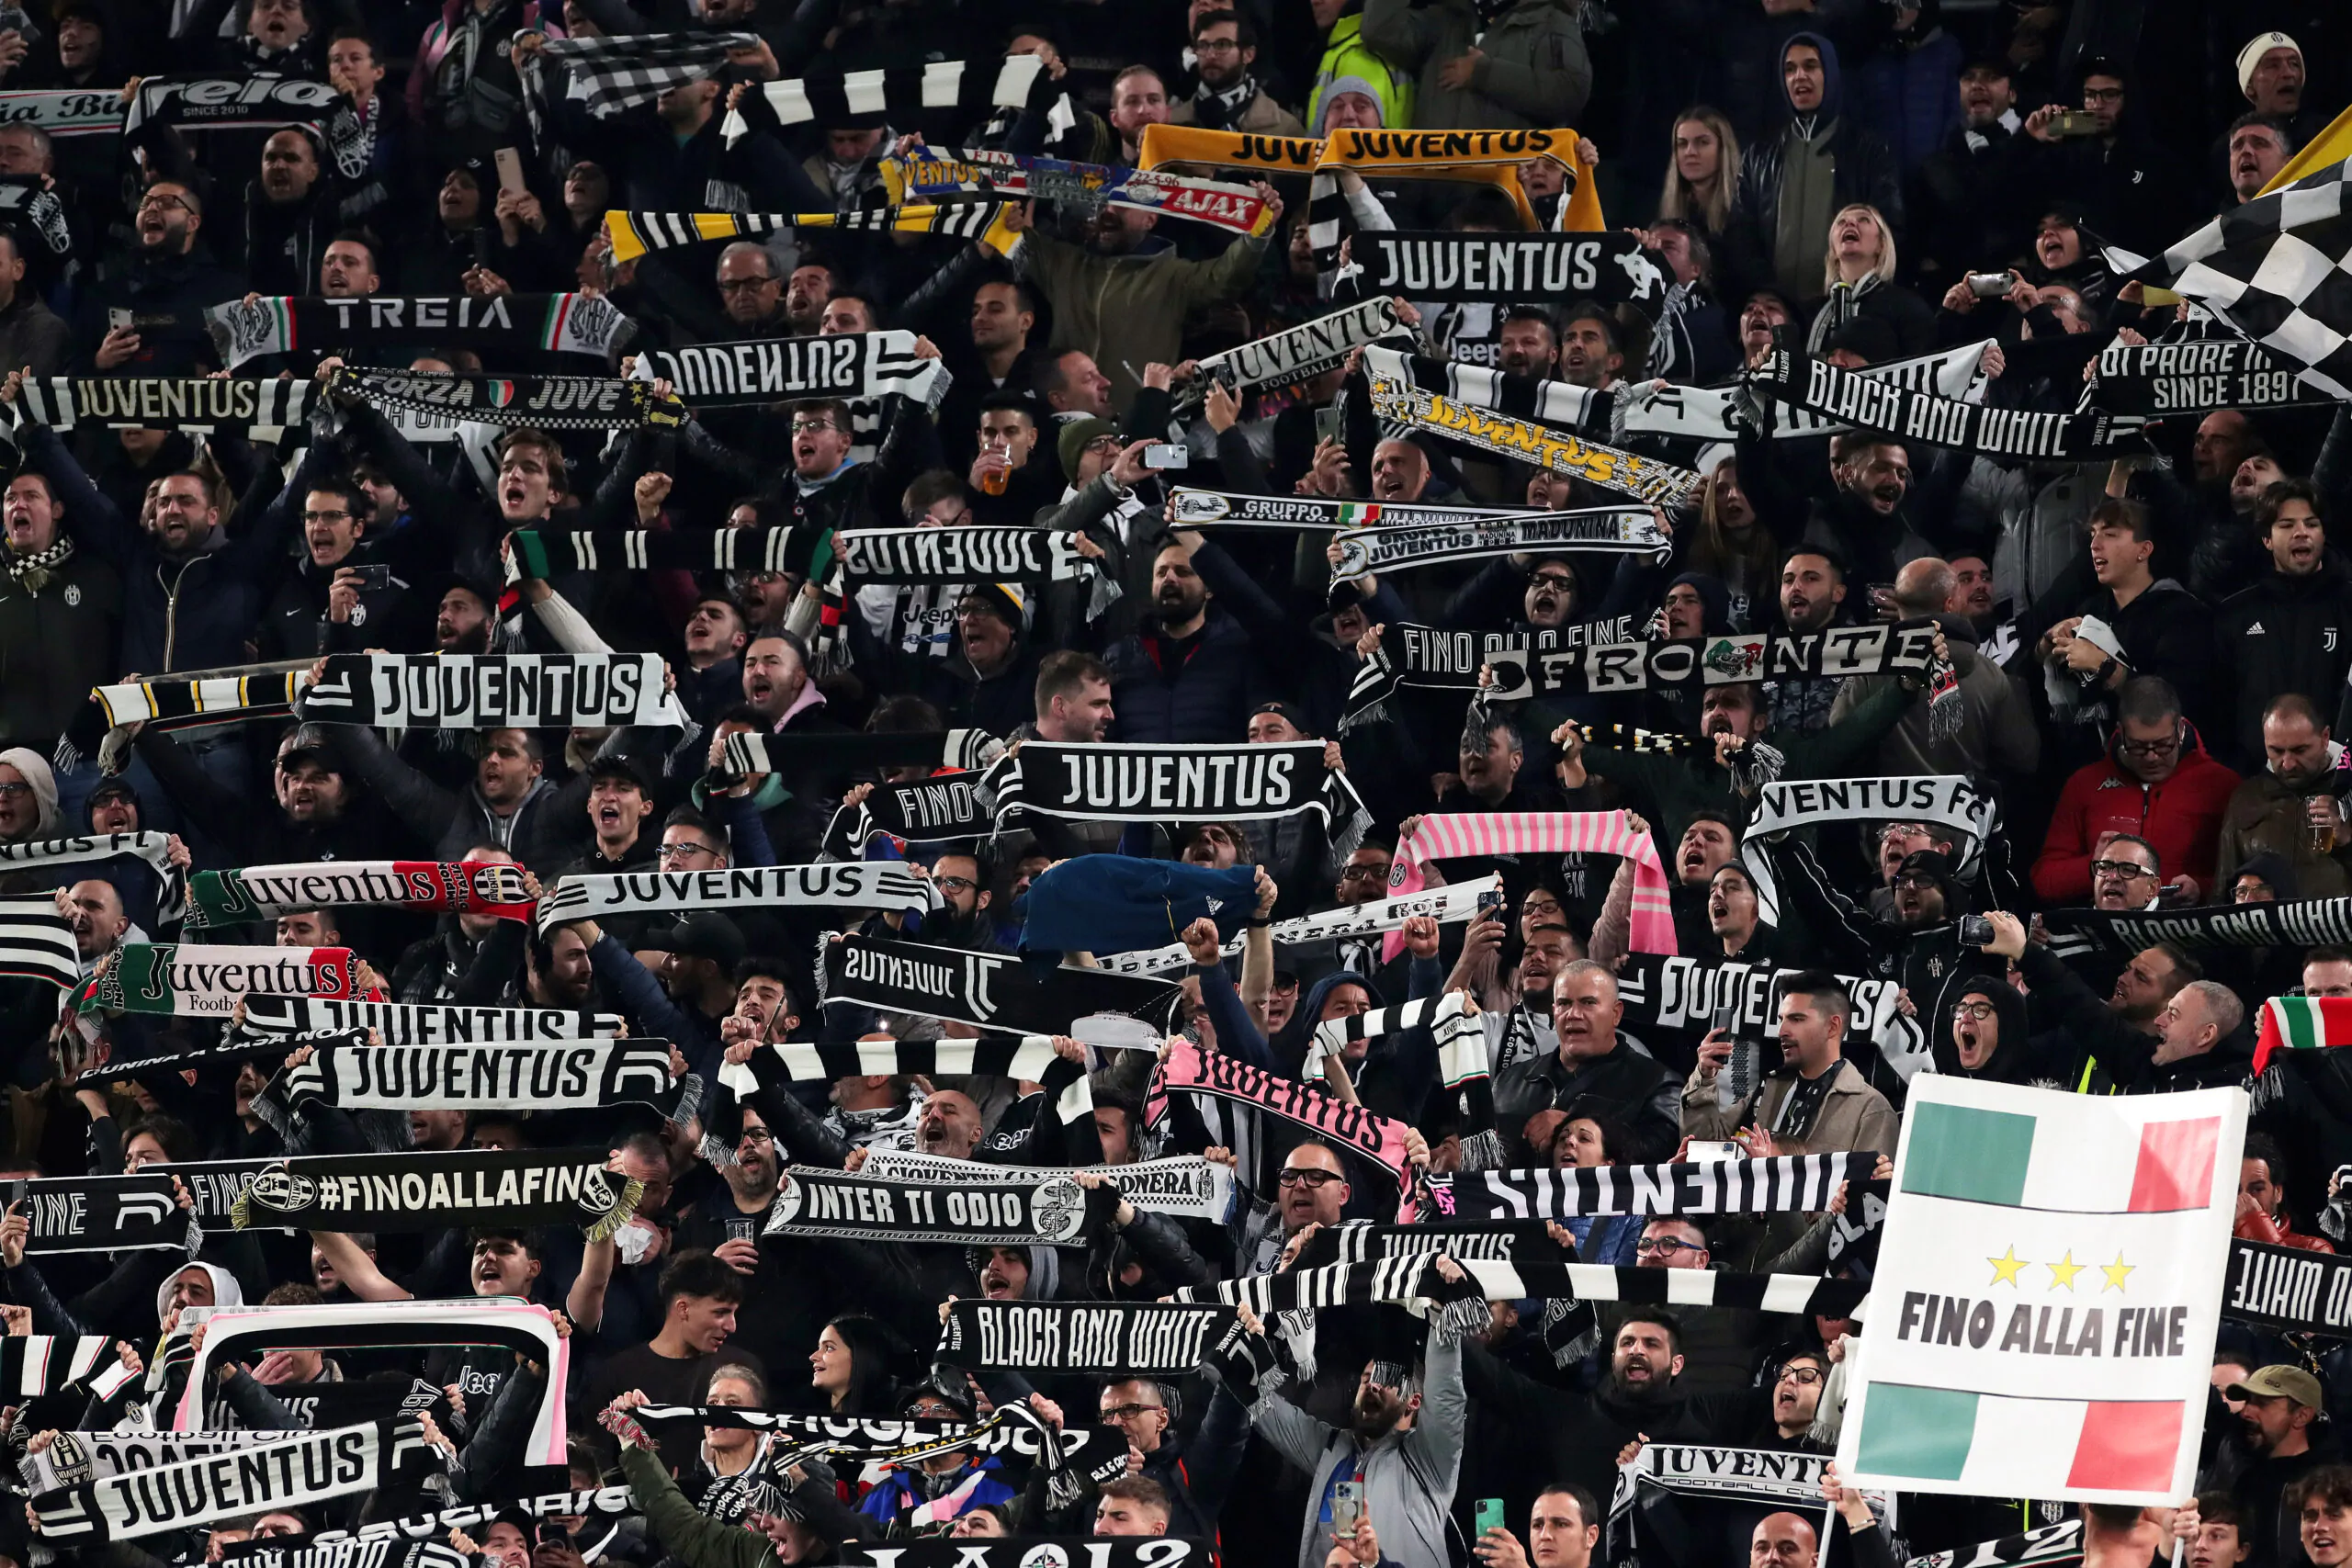 FOTO – I tifosi della Juventus non dimenticano Gianluca Vialli: striscione fuori dallo Stadium